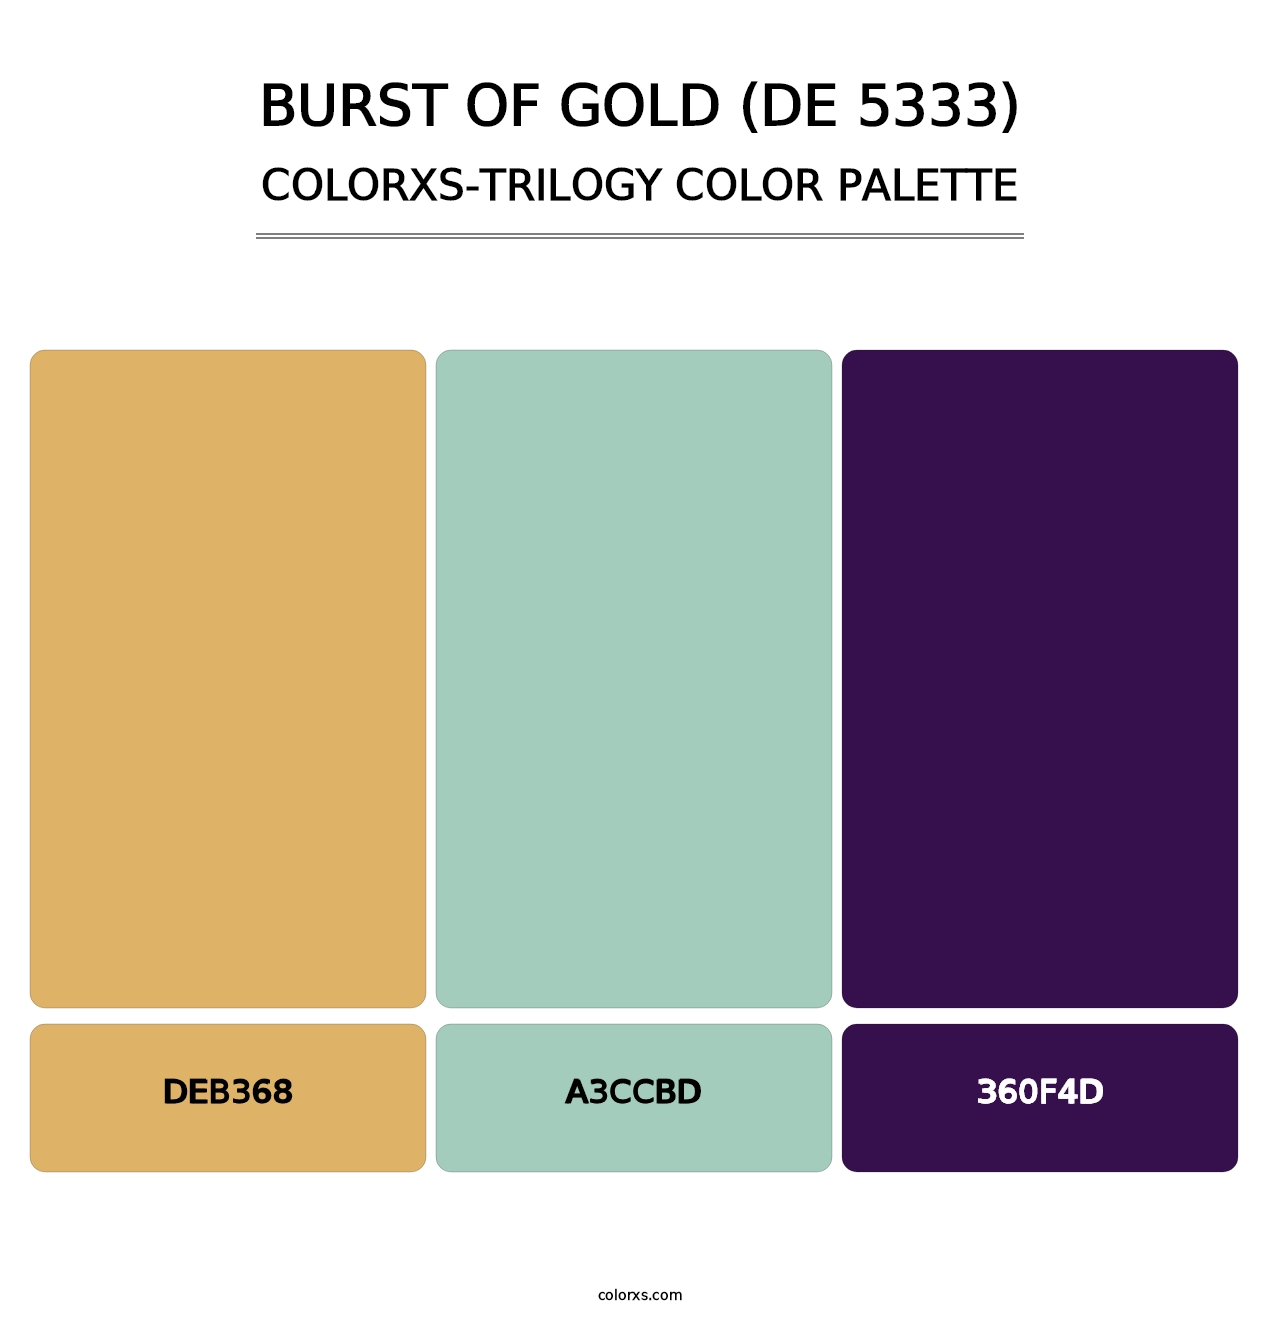 Burst of Gold (DE 5333) - Colorxs Trilogy Palette